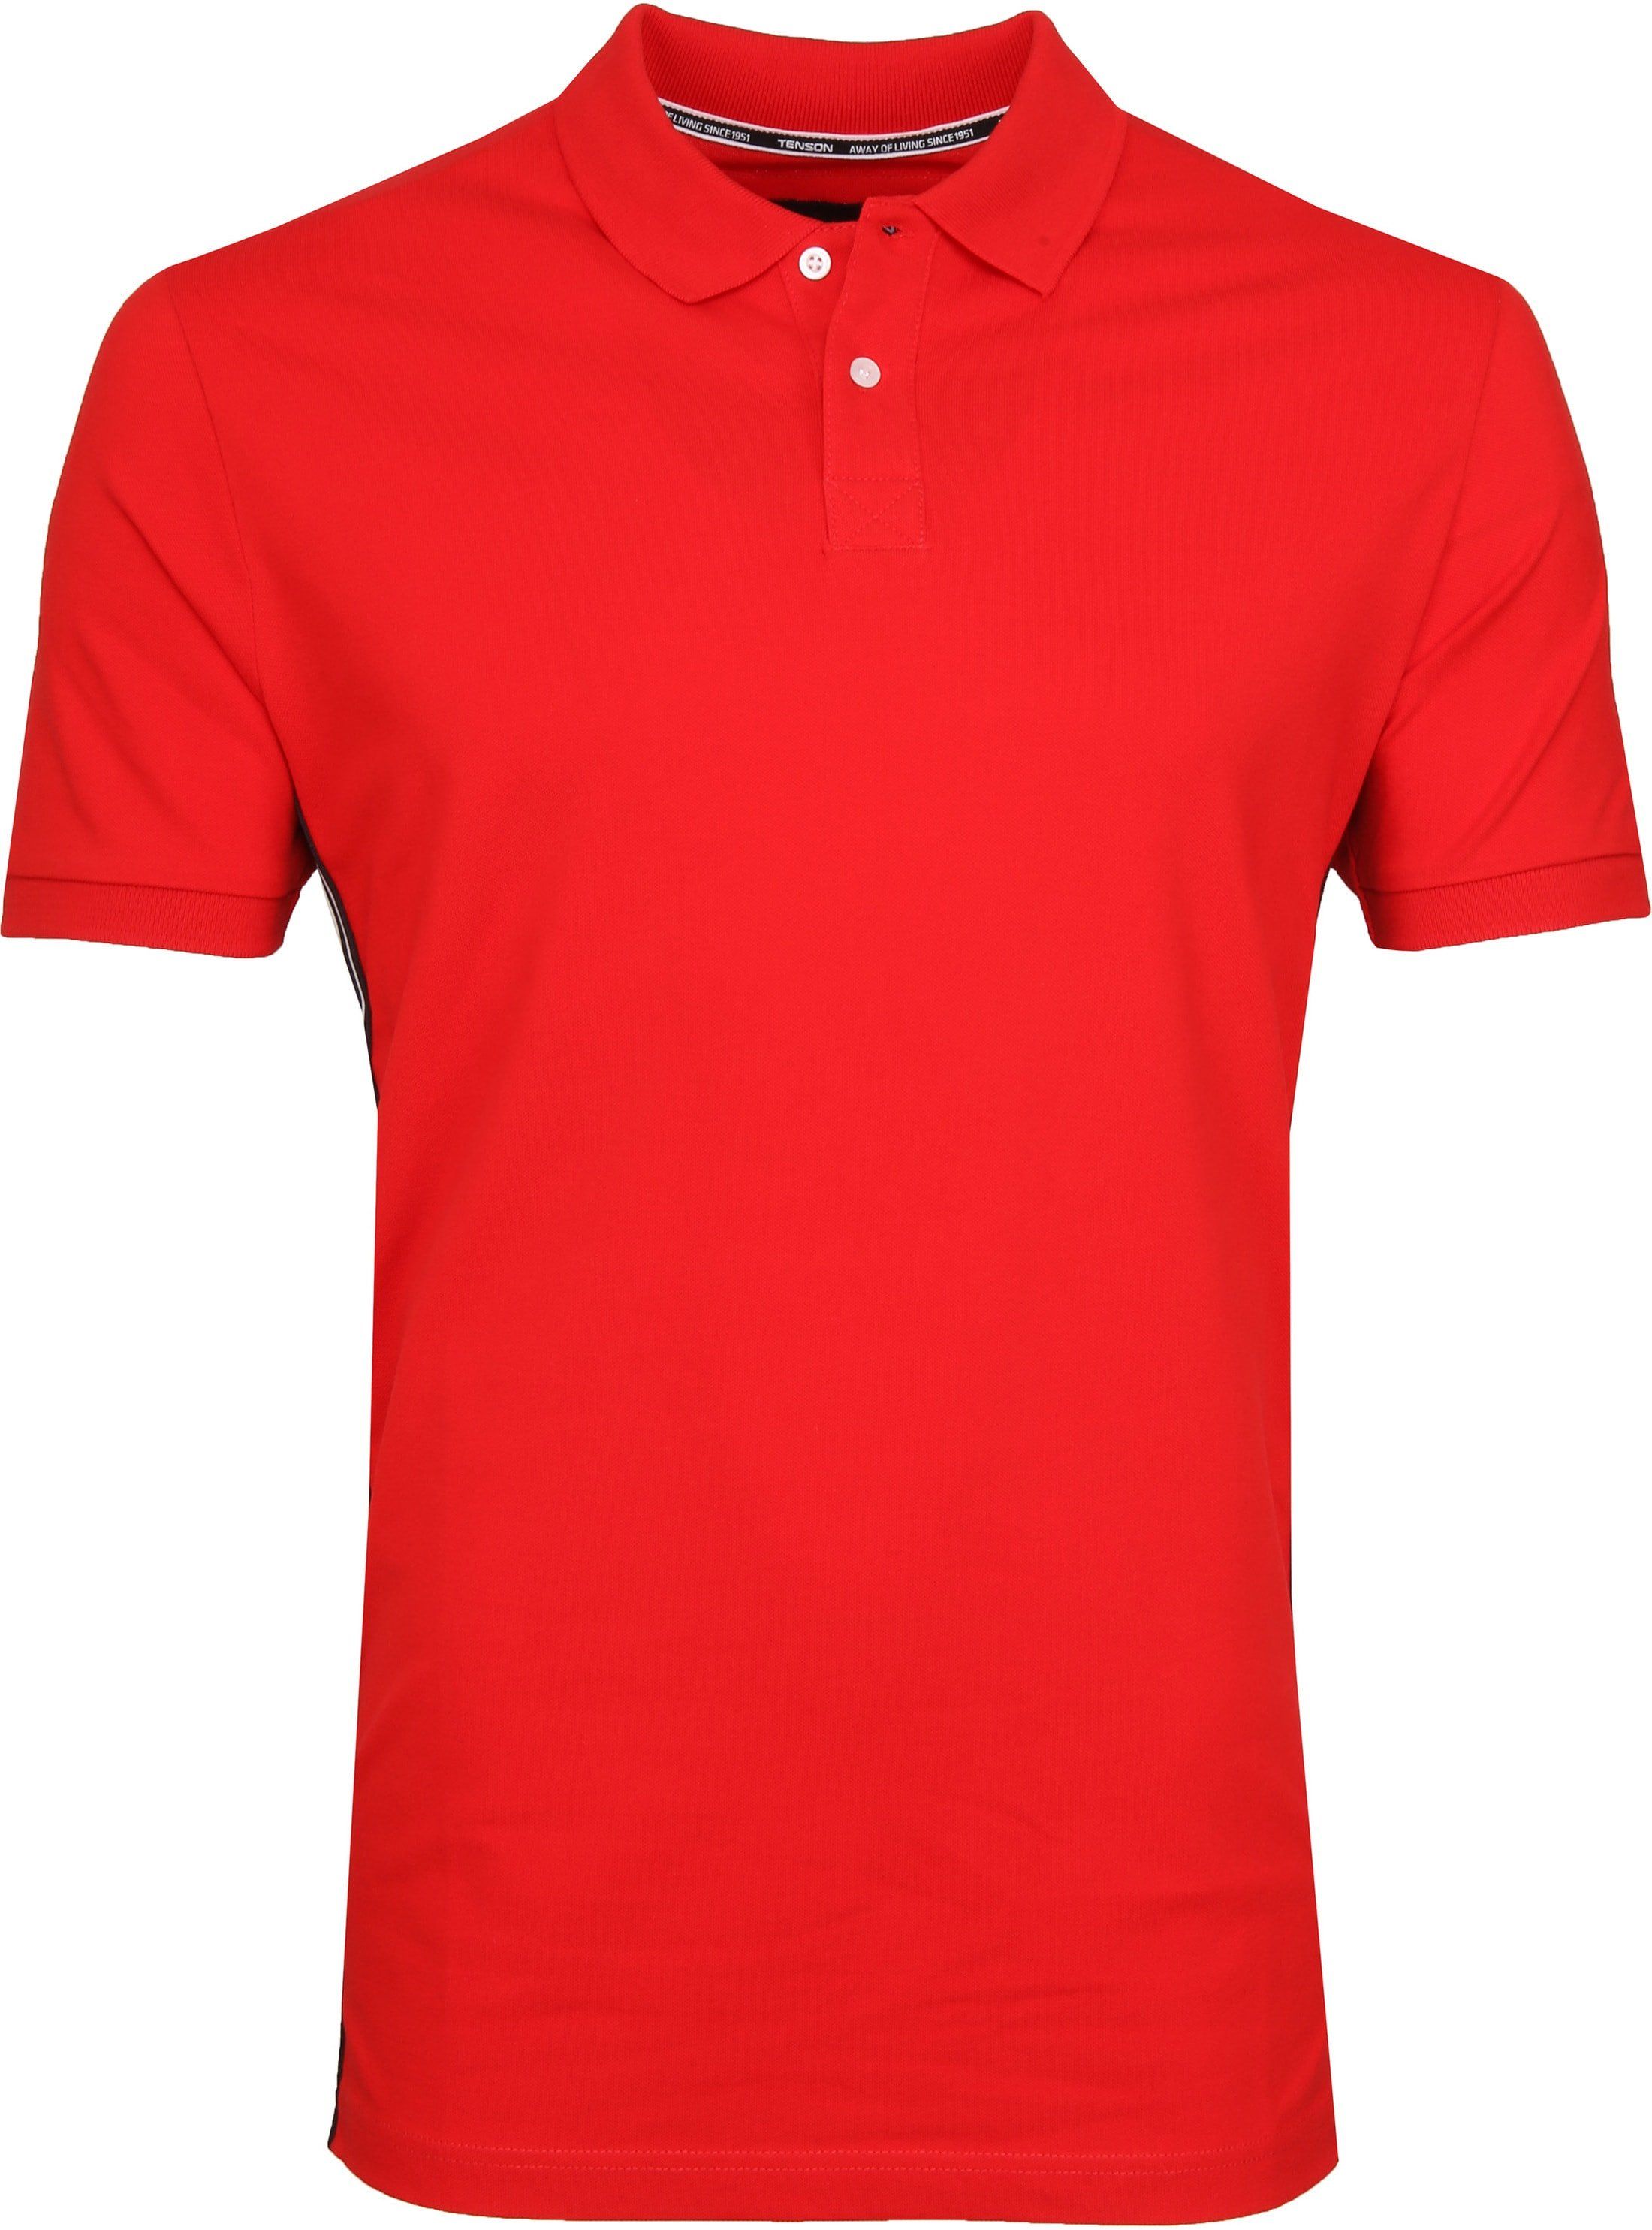 Tenson Polo Shirt Zenith Red size M